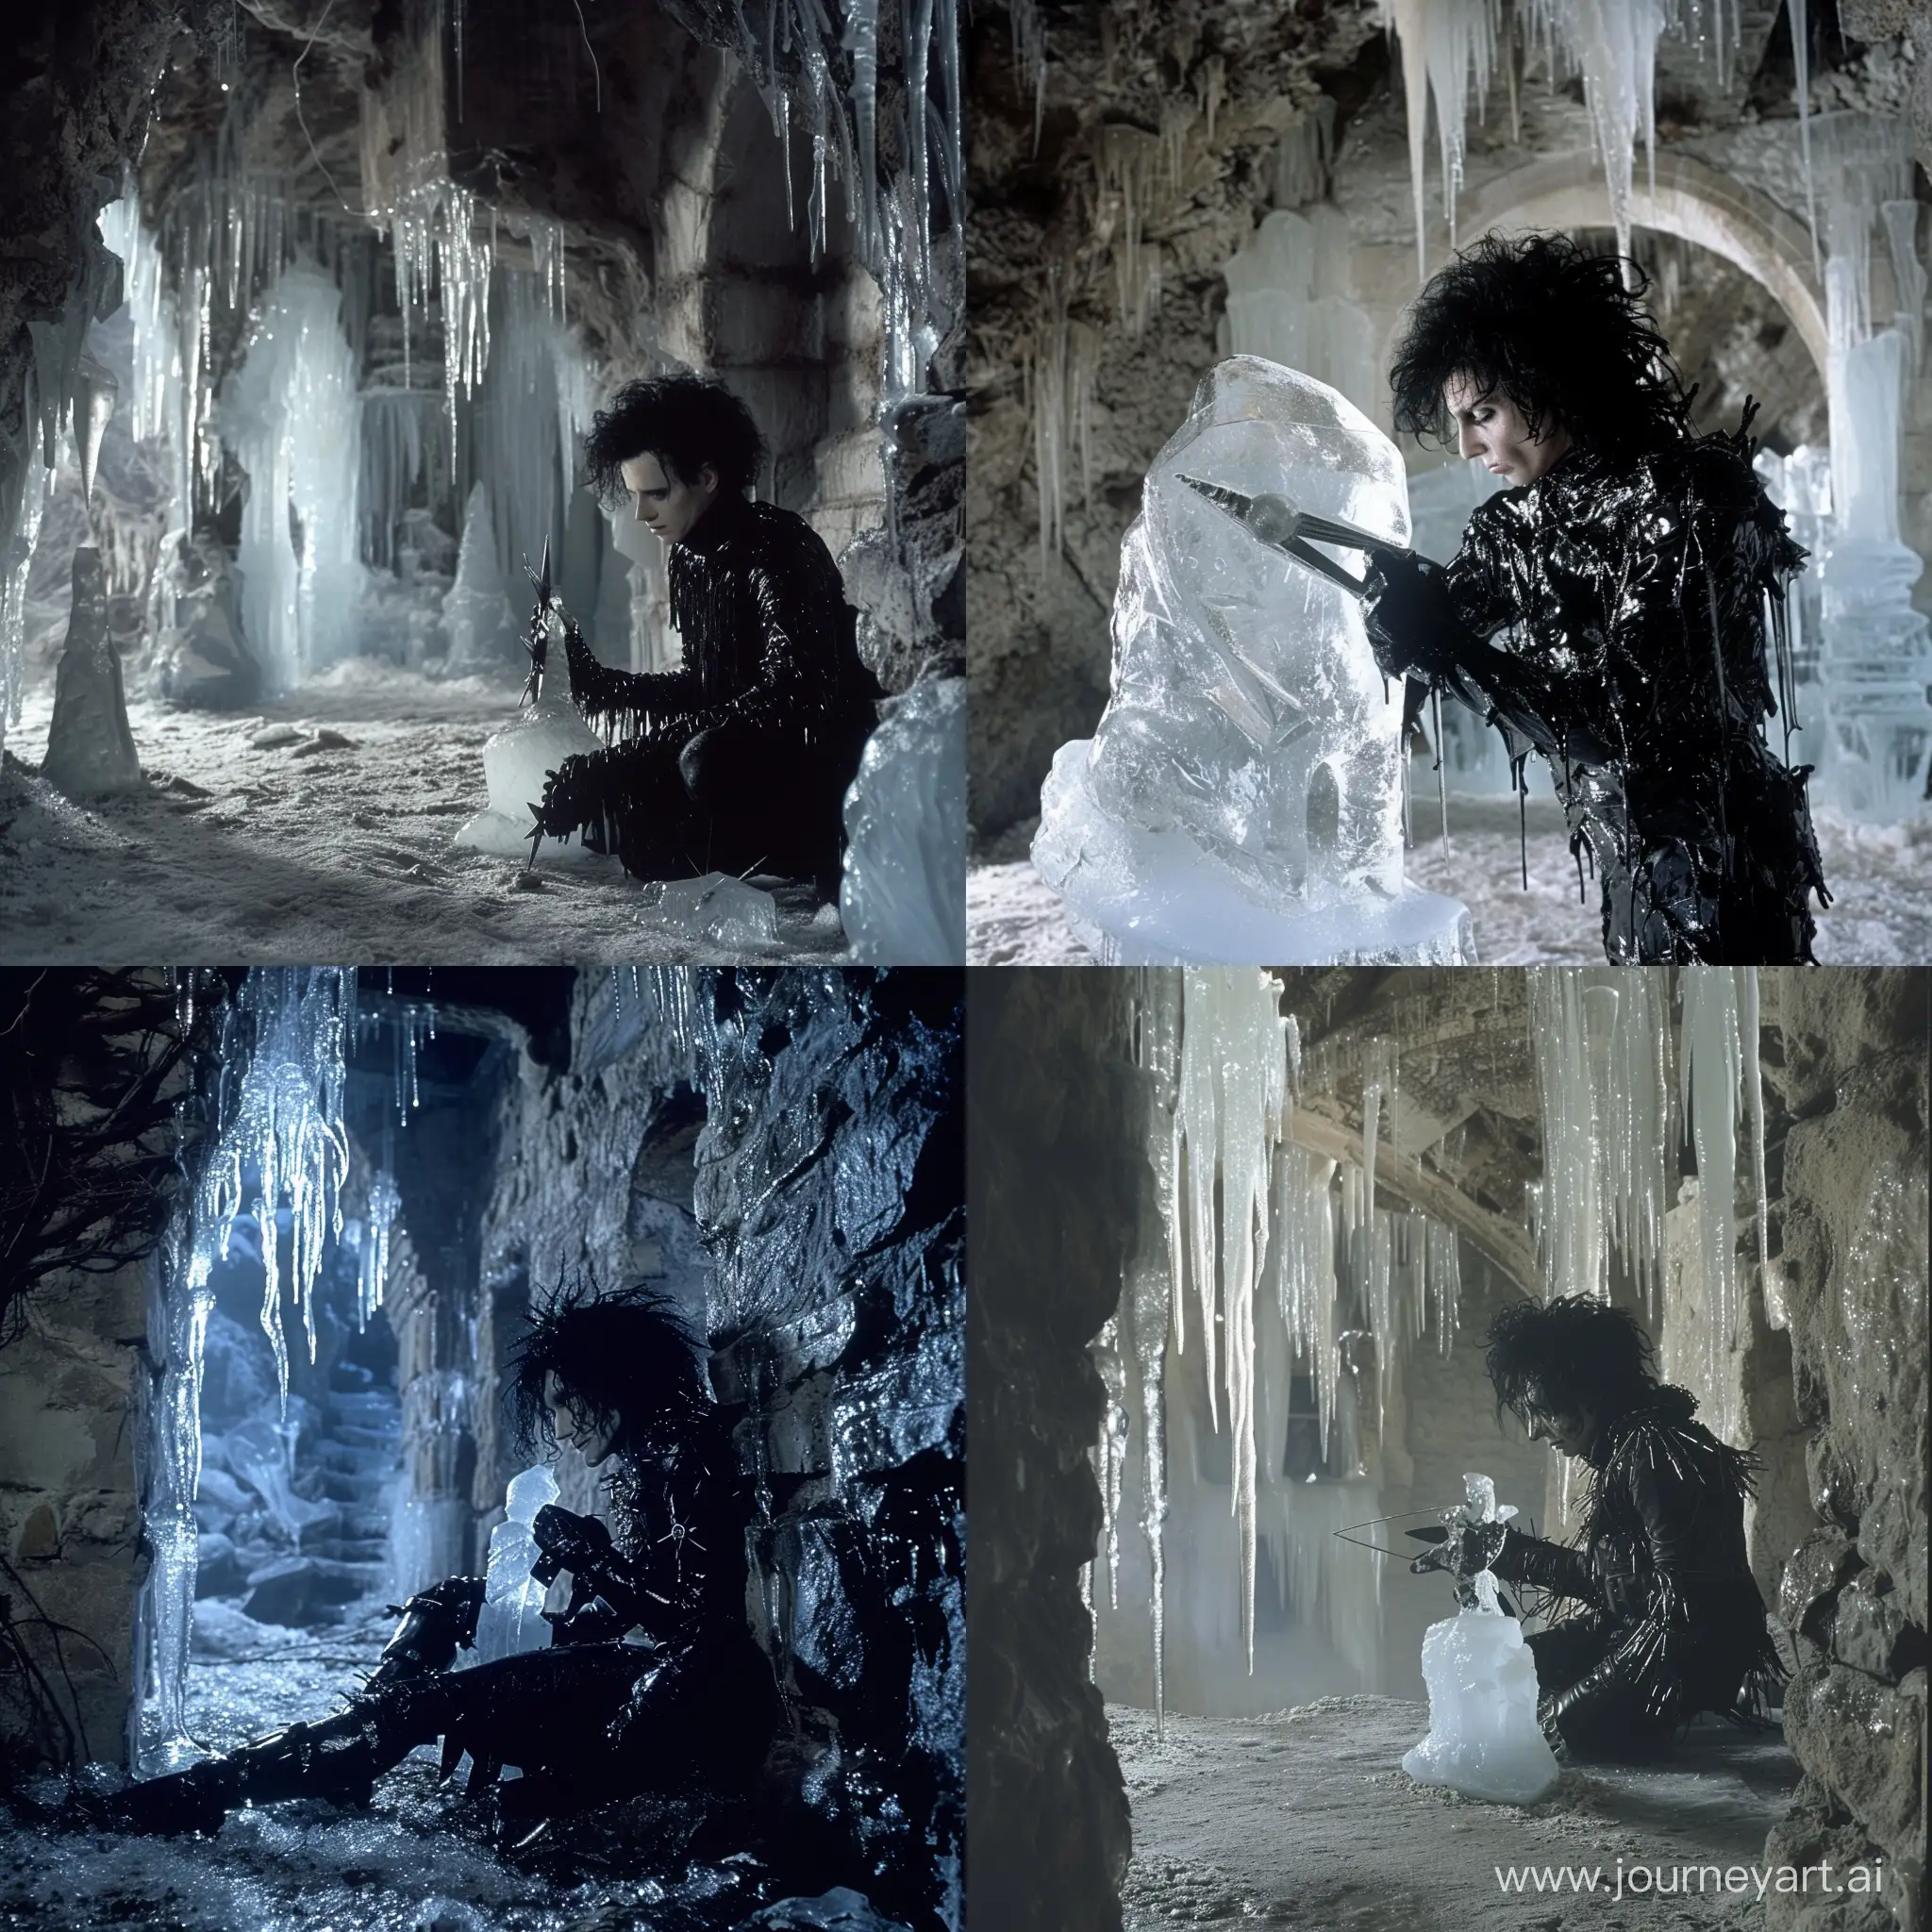 Сцена из DVD-издания Эдвард руки-ножницы, где Эдвард выстригает фигуру из льда, в заброшенном замке